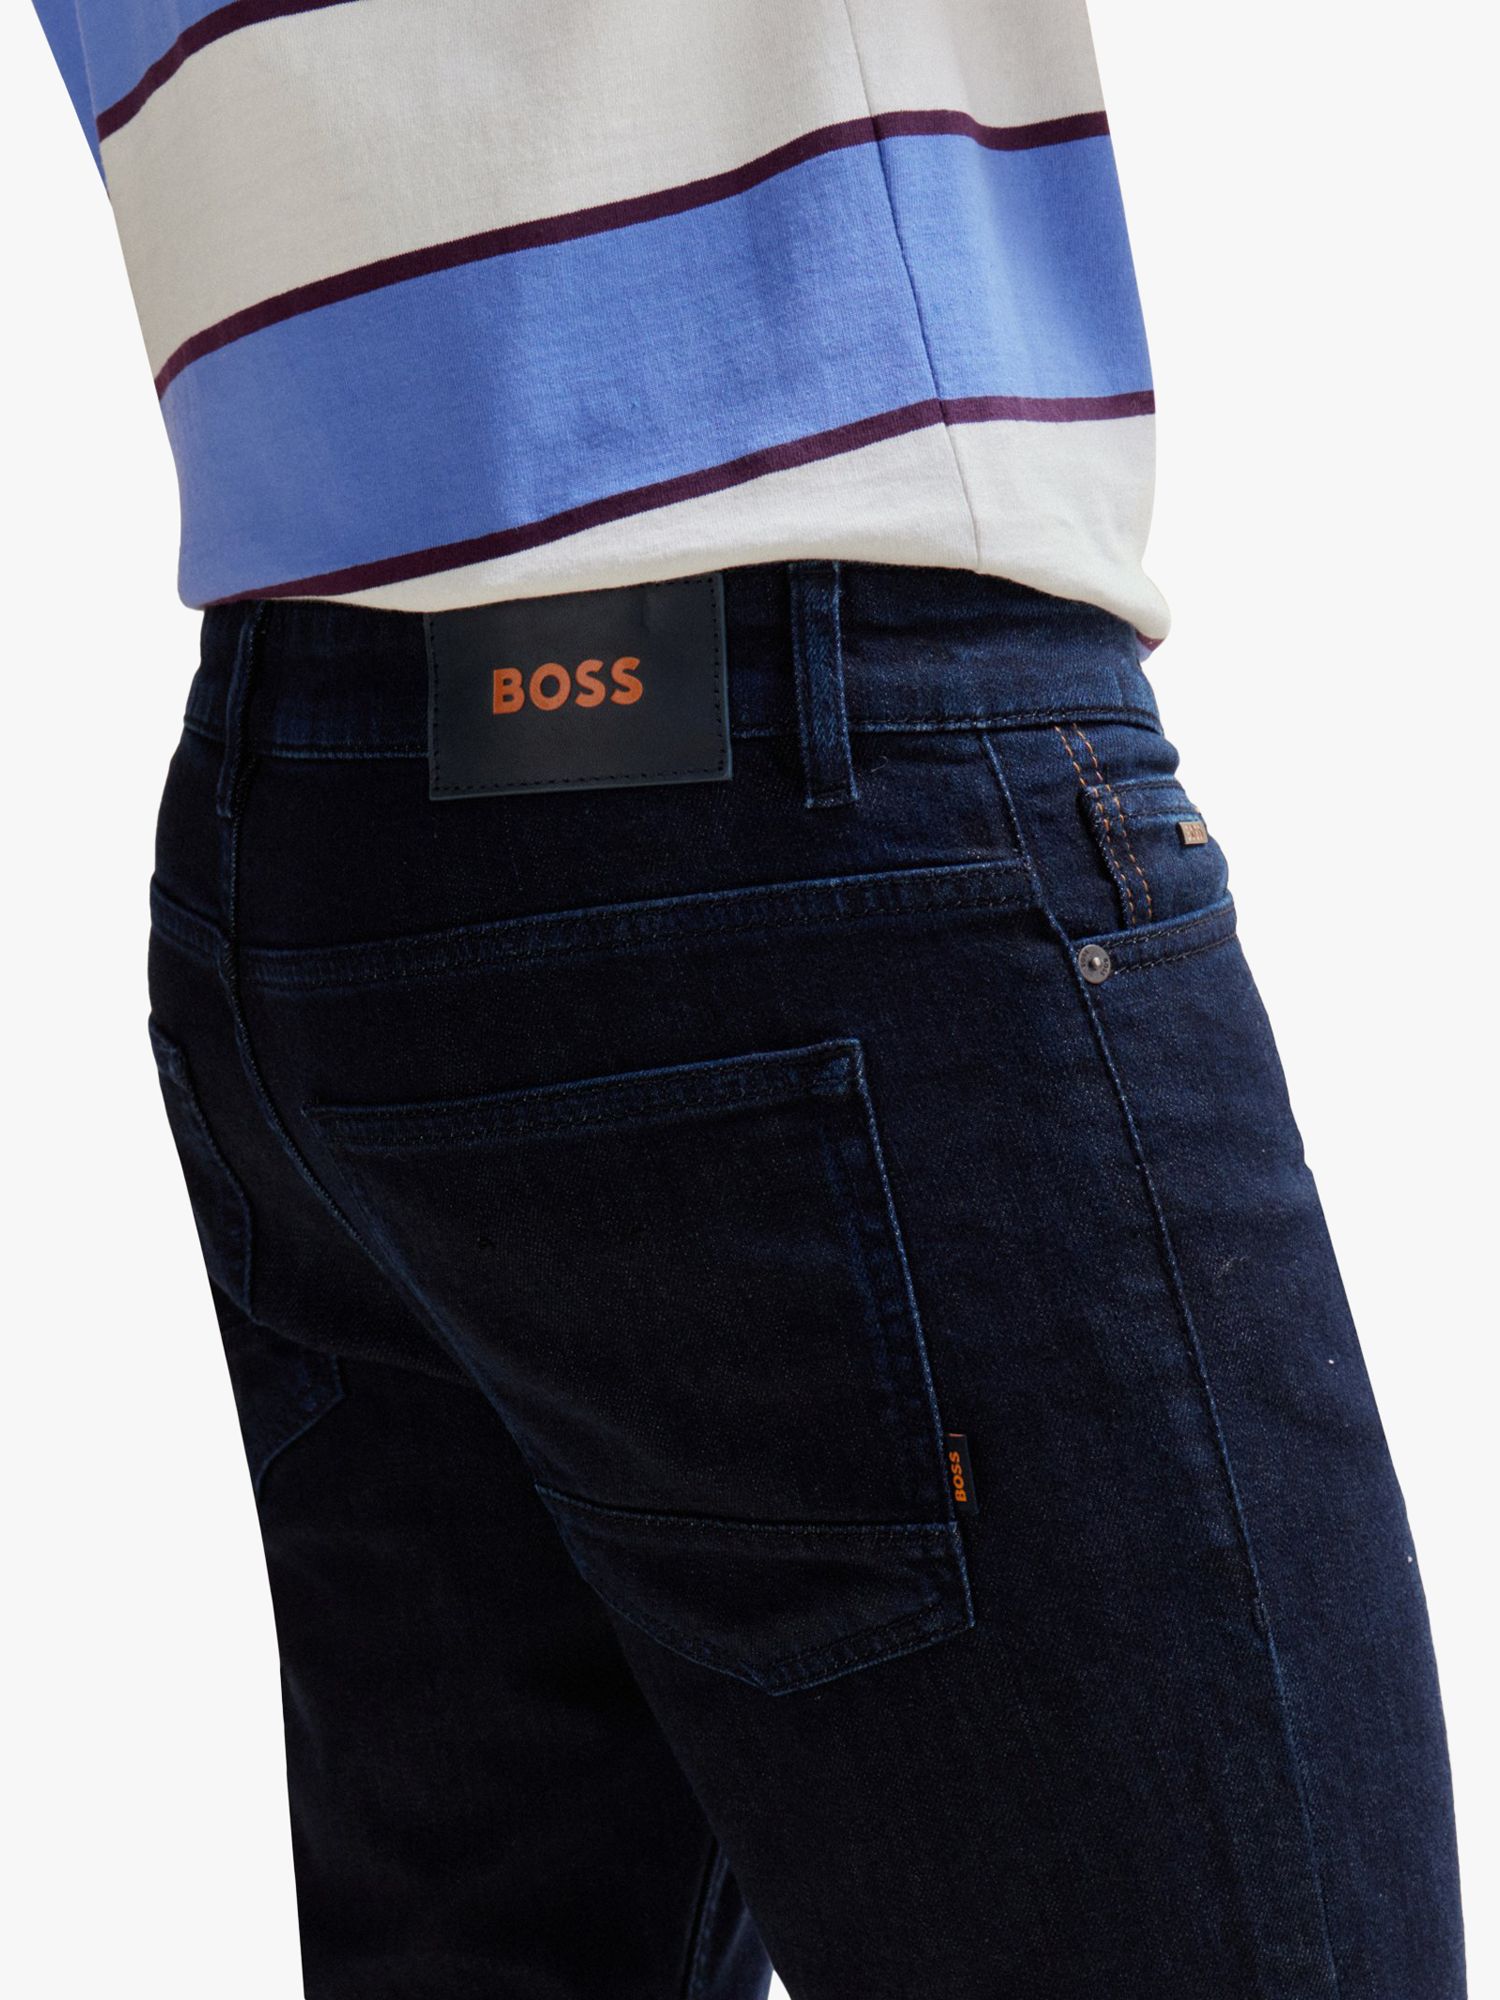 Boss Delaware Slim Fit Jeans, Navy, 33XL